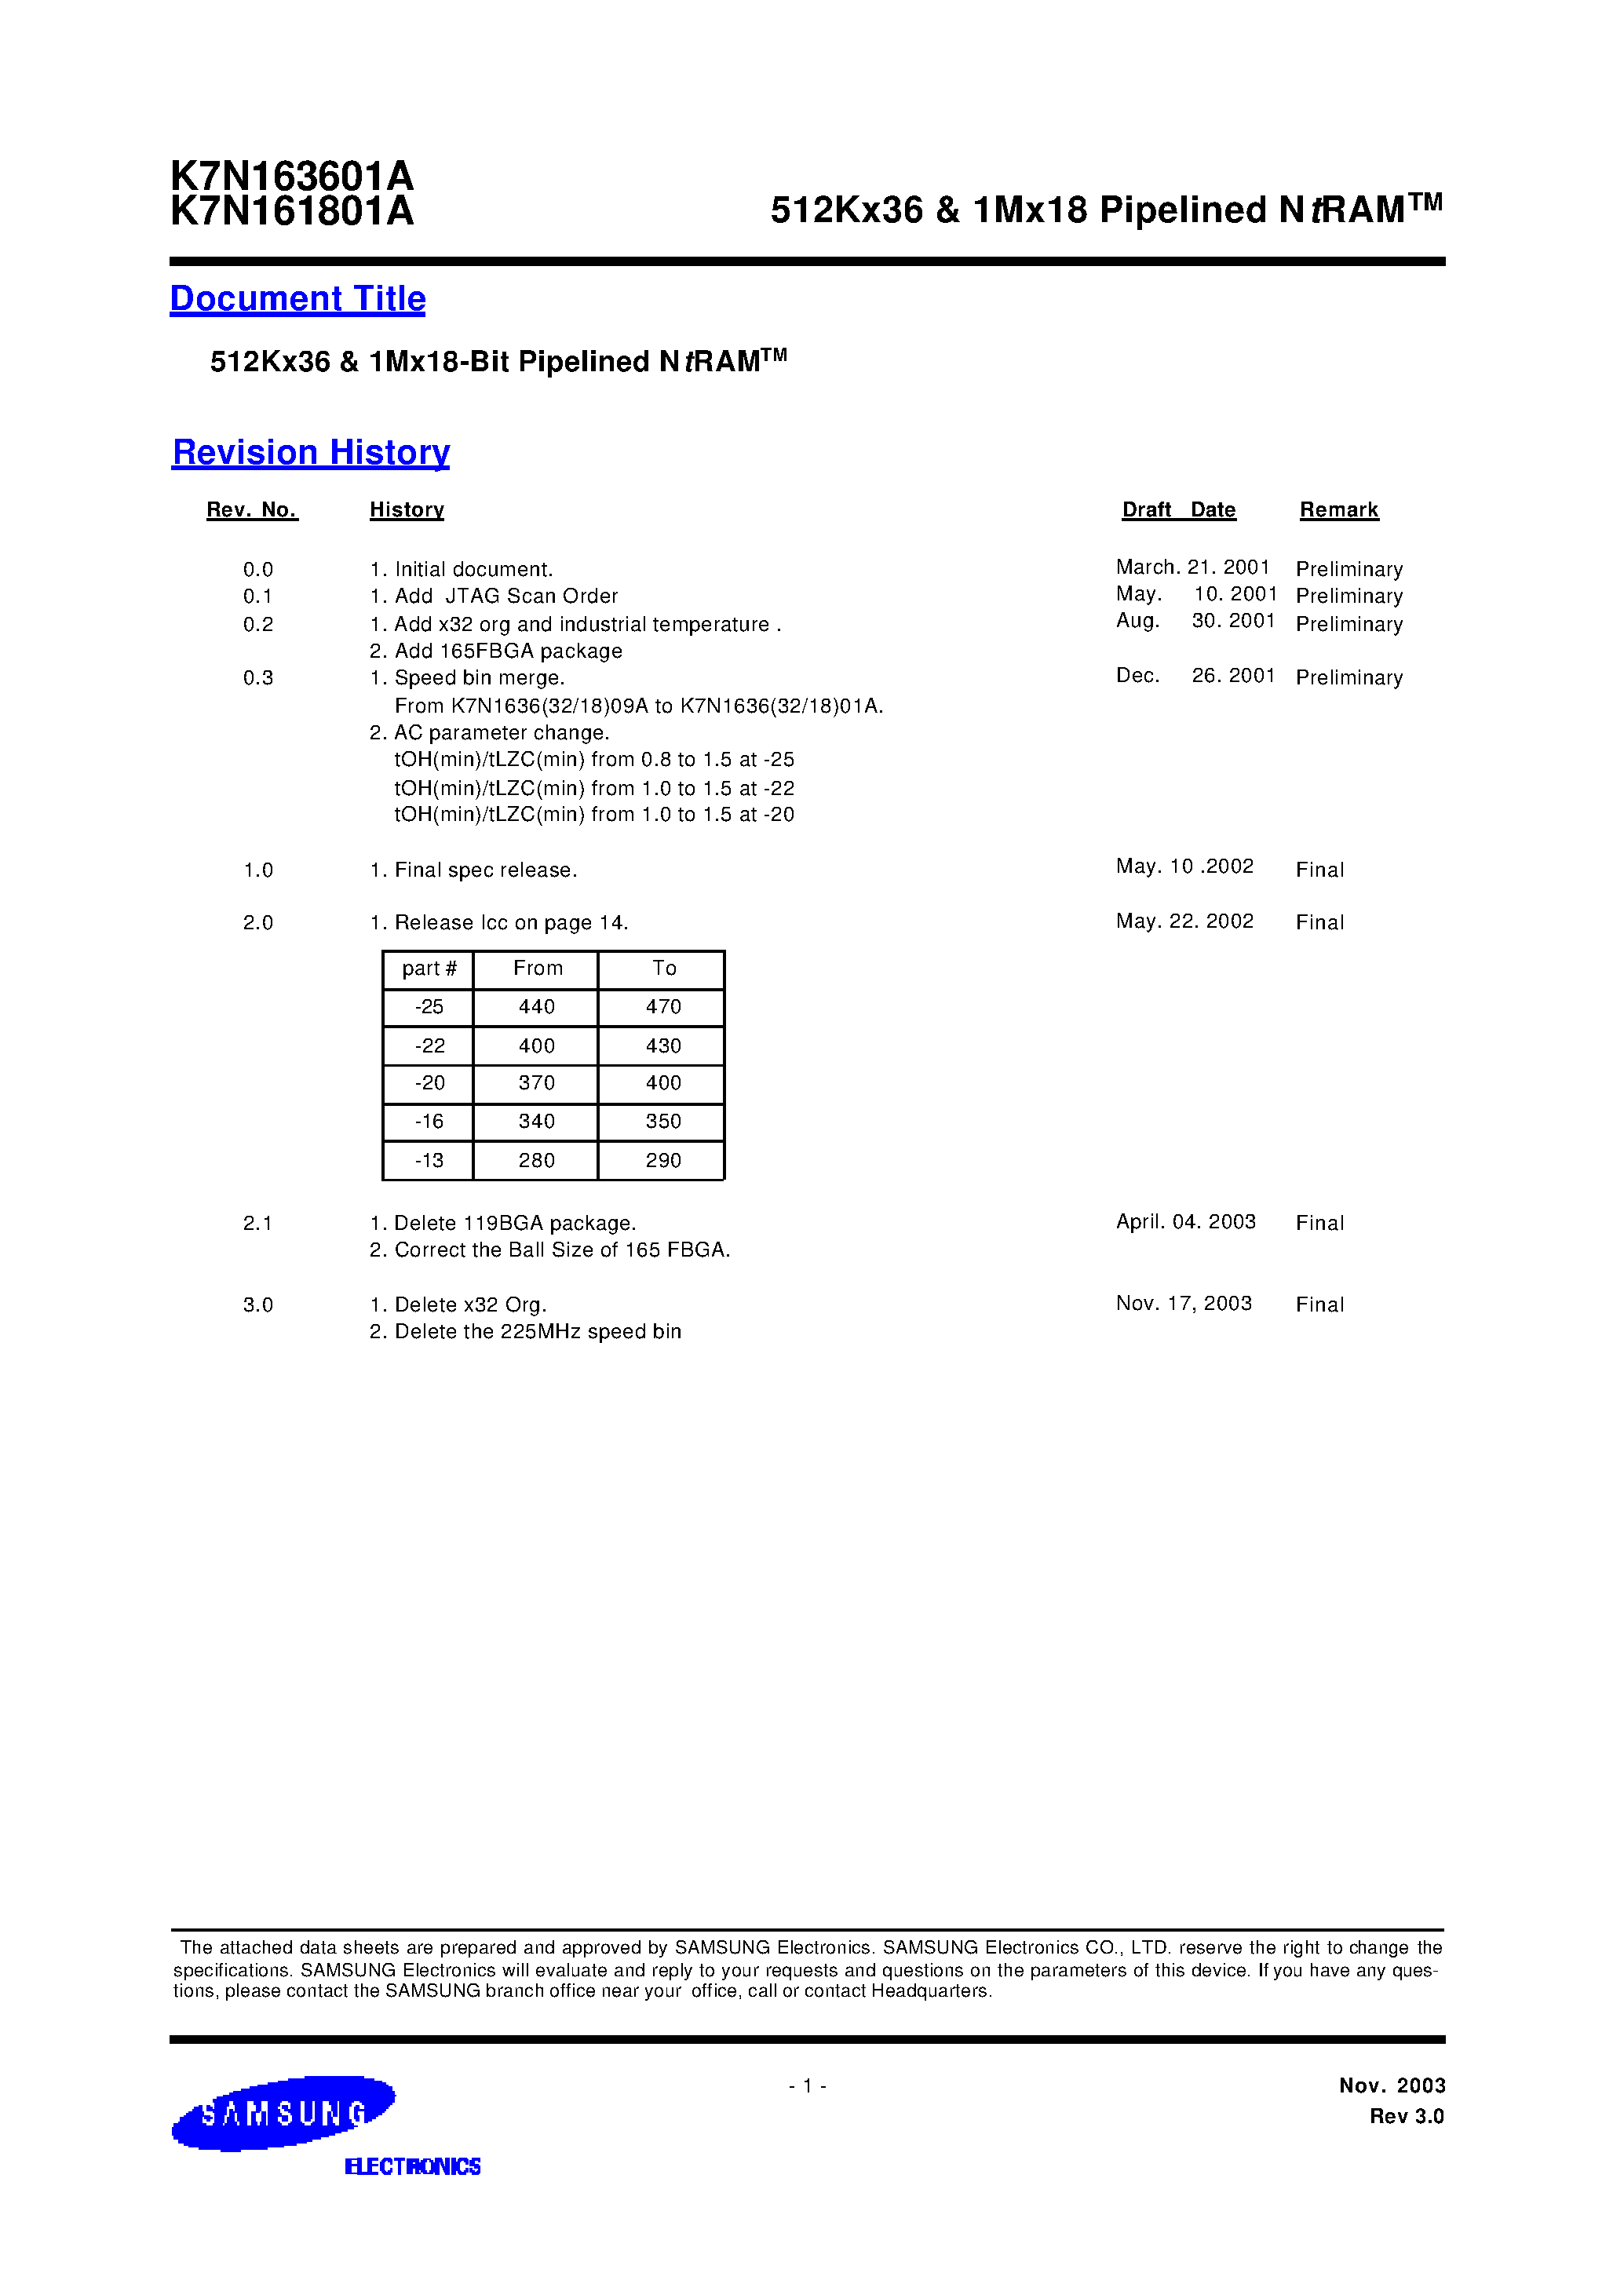 Даташит K7N163601A-Q(F)C(I)13 - 512Kx36 & 1Mx18 Pipelined NtRAM страница 1